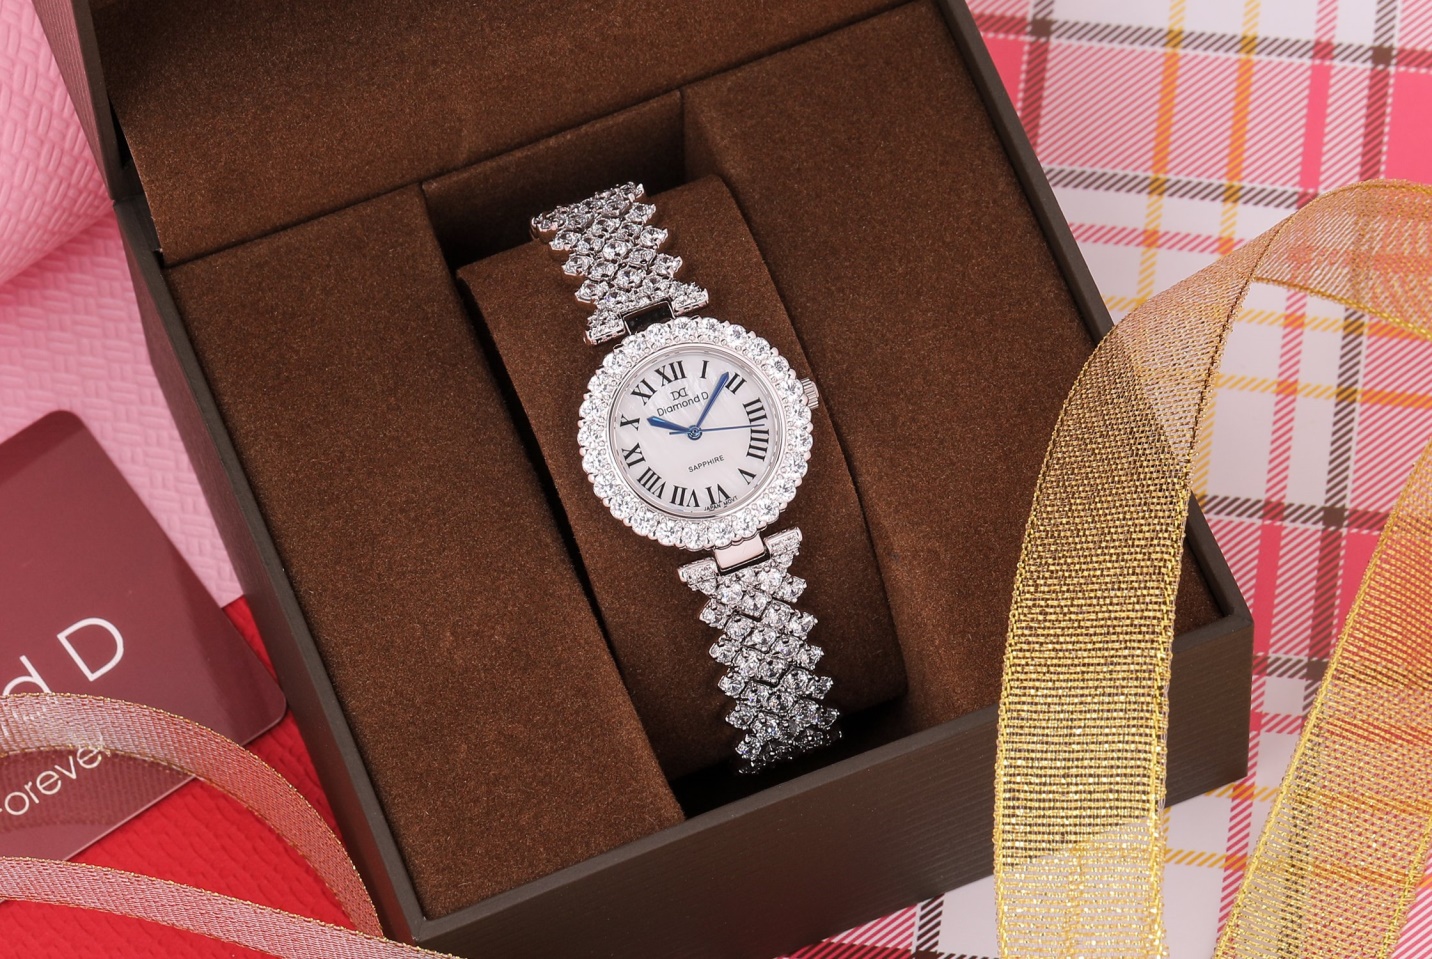 Đồng hồ DM6305B5 được gắn “full” kim cương nhân tạo, tạo nên một sản phẩm vô cùng tinh xảo và đẳng cấp. Với hàng loạt viên kim cương nhân tạo được gắn trên mặt đồng hồ cũng như xung quanh khung viền, tôn lên vẻ đẹp lộng lẫy và quyền quý